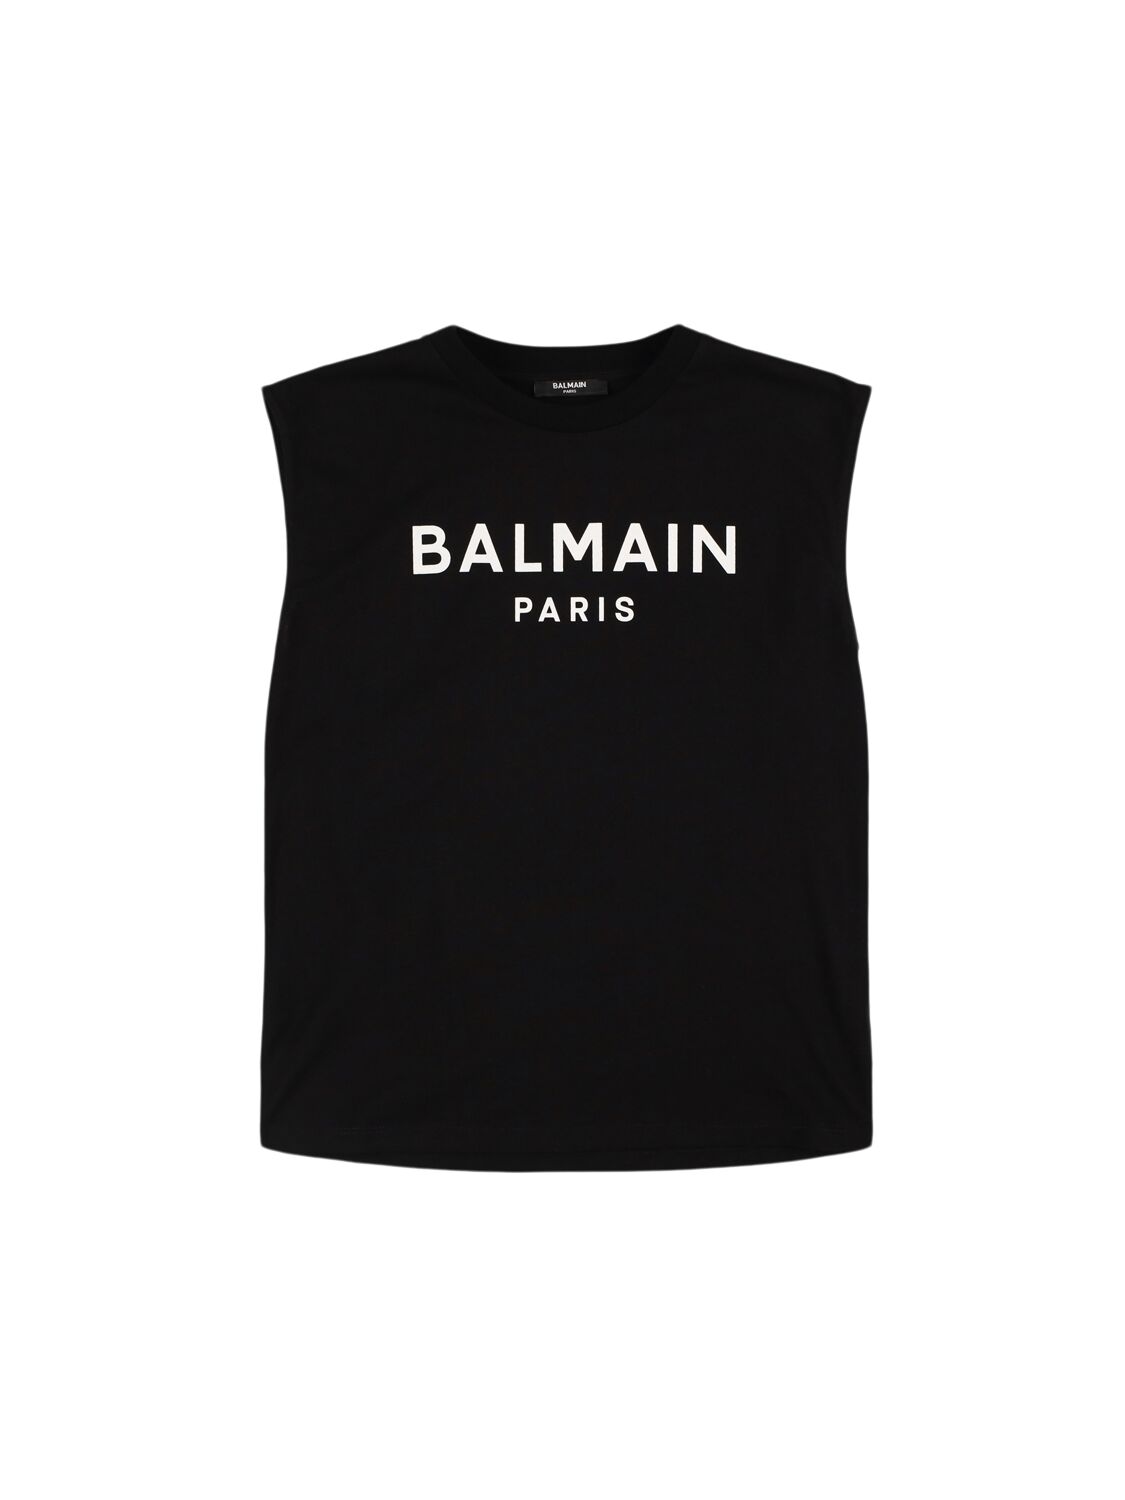 Balmain Kids' Printed Cotton Jersey Tank Top In Black,white